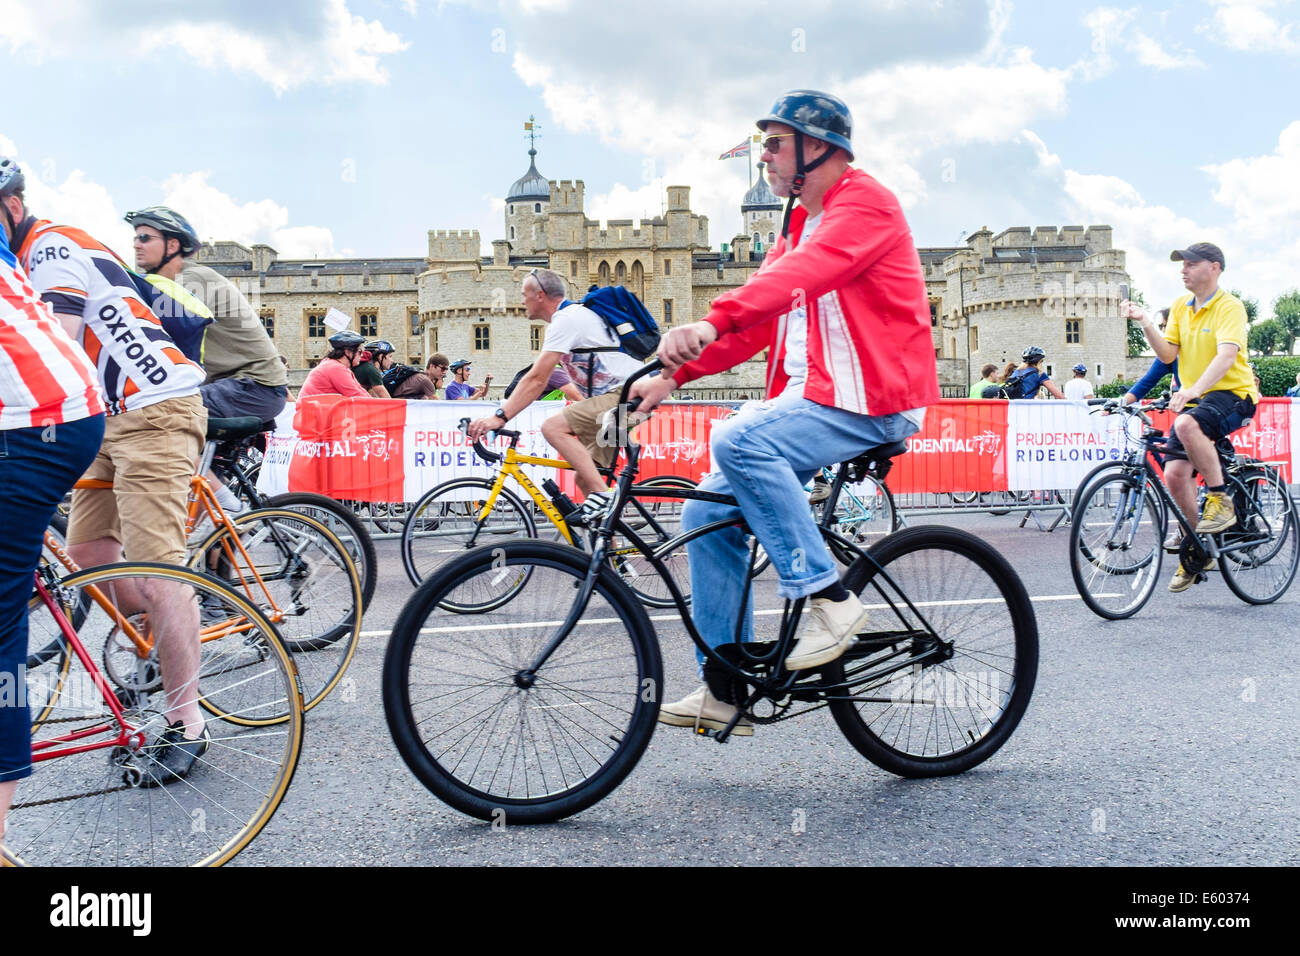 Cavaliers dans la Prudential RideLondon Freecycle event pass la Tour de Londres Banque D'Images